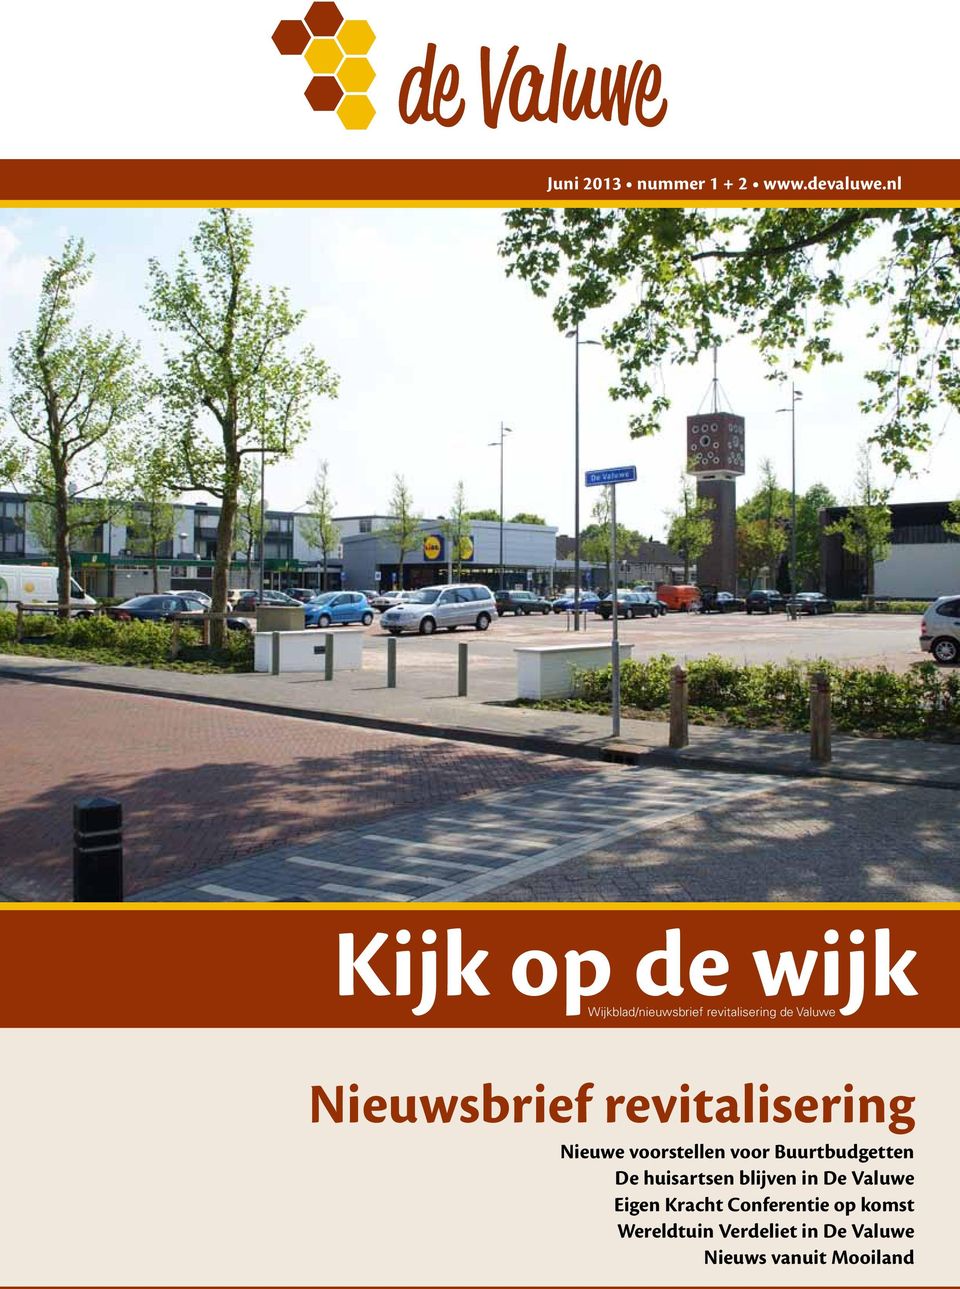 Wijkblad/nieuwsbrief revitalisering de Valuwe Nieuwsbrief revitalisering Nieuwe